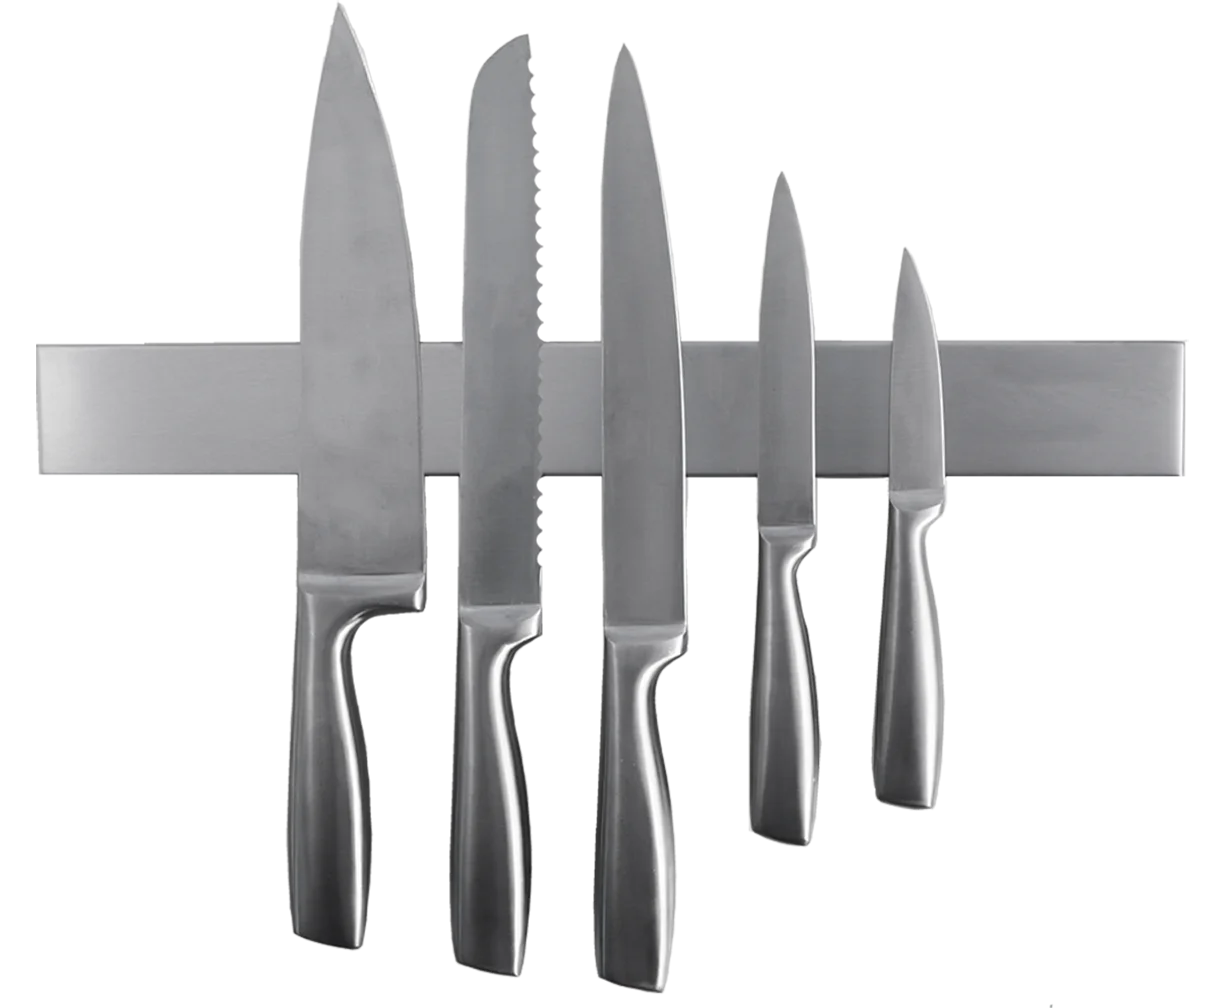 Купить нержавеющий нож. Ножи Kitchen Knife Stainless Steel. Держатель магнитный для ножей hn580. Держатель магнитный fk030m-2 (для ножей, 38 см). 32288 Держатель магнитный для ножей.